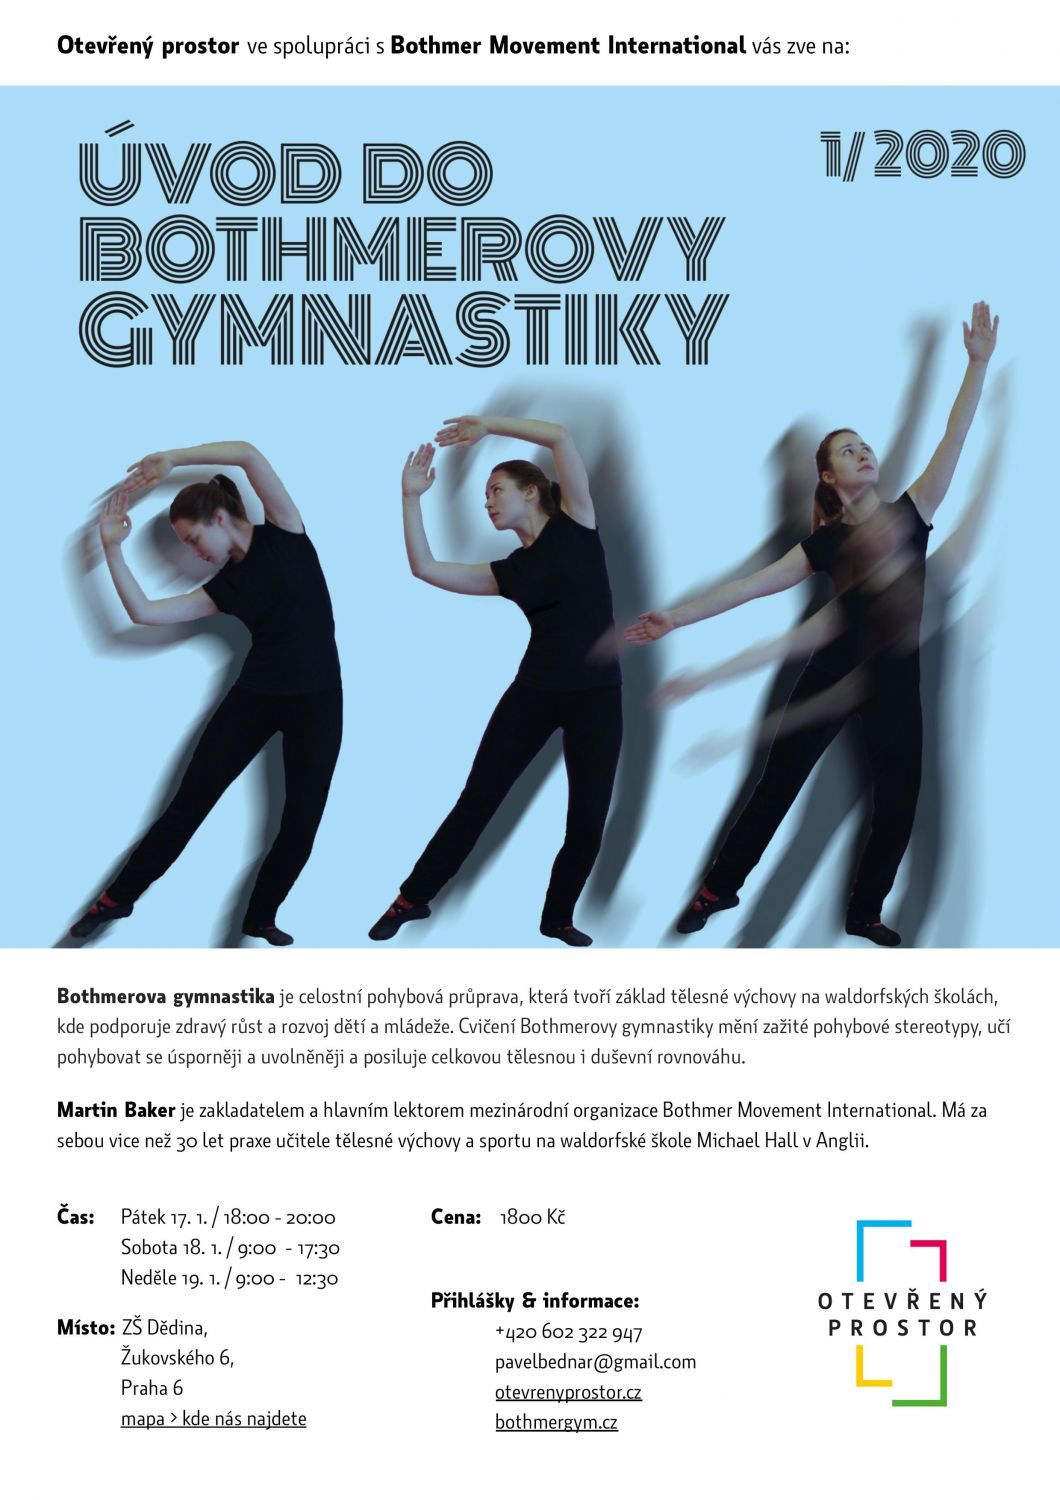 Úvod do Bothmerovy gymnastiky - víkednový workshop s Martinem Bakerem